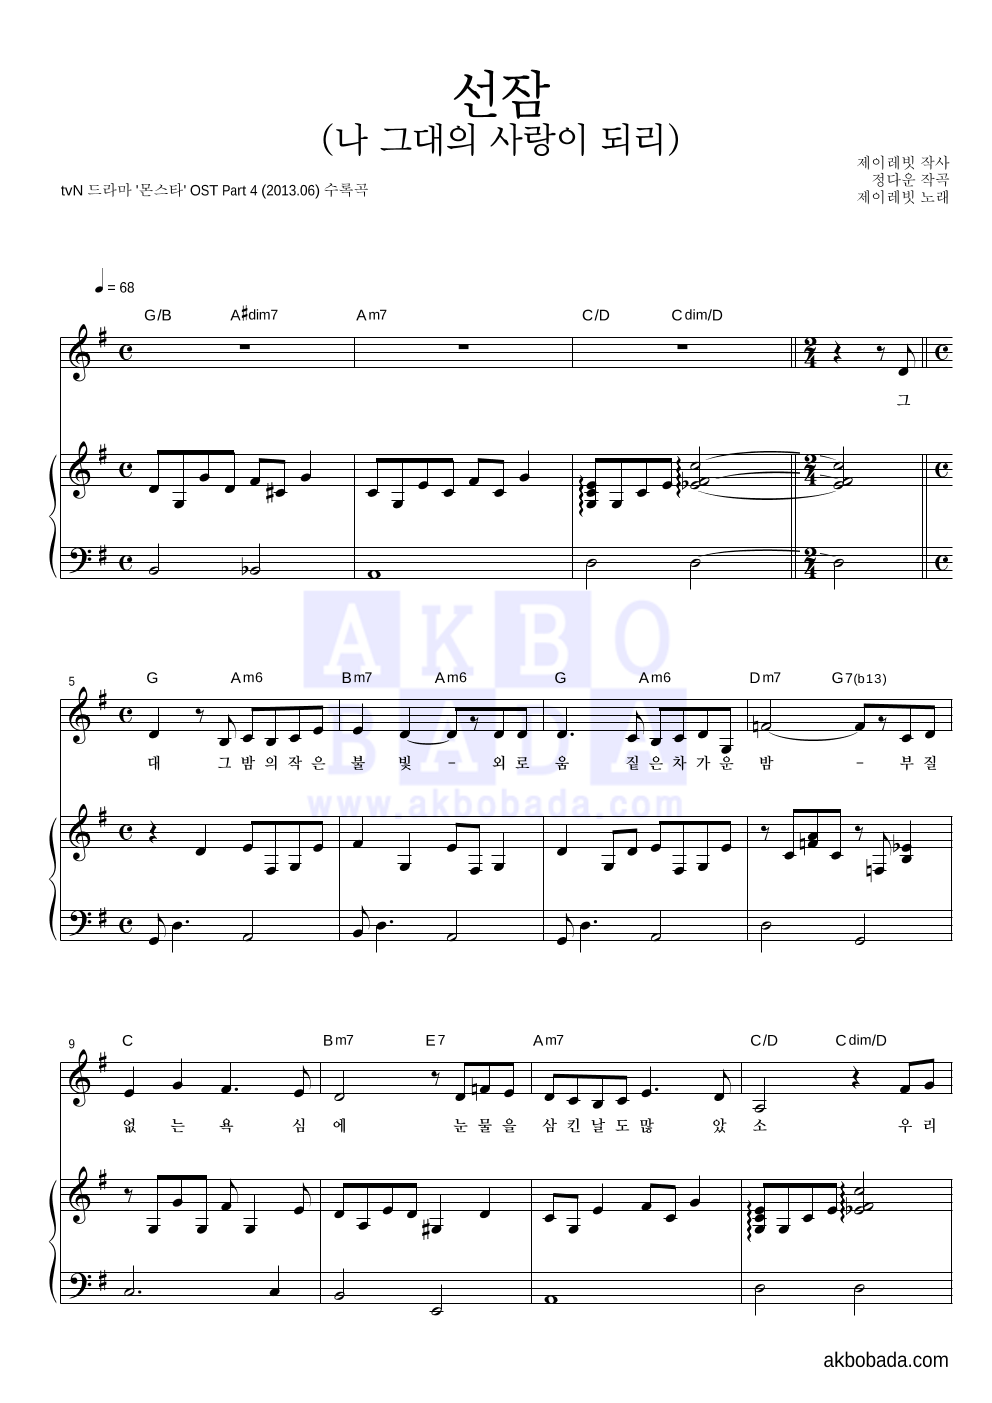 제이레빗 - 선잠 (나 그대의 사랑이 되리) 피아노 3단 악보 